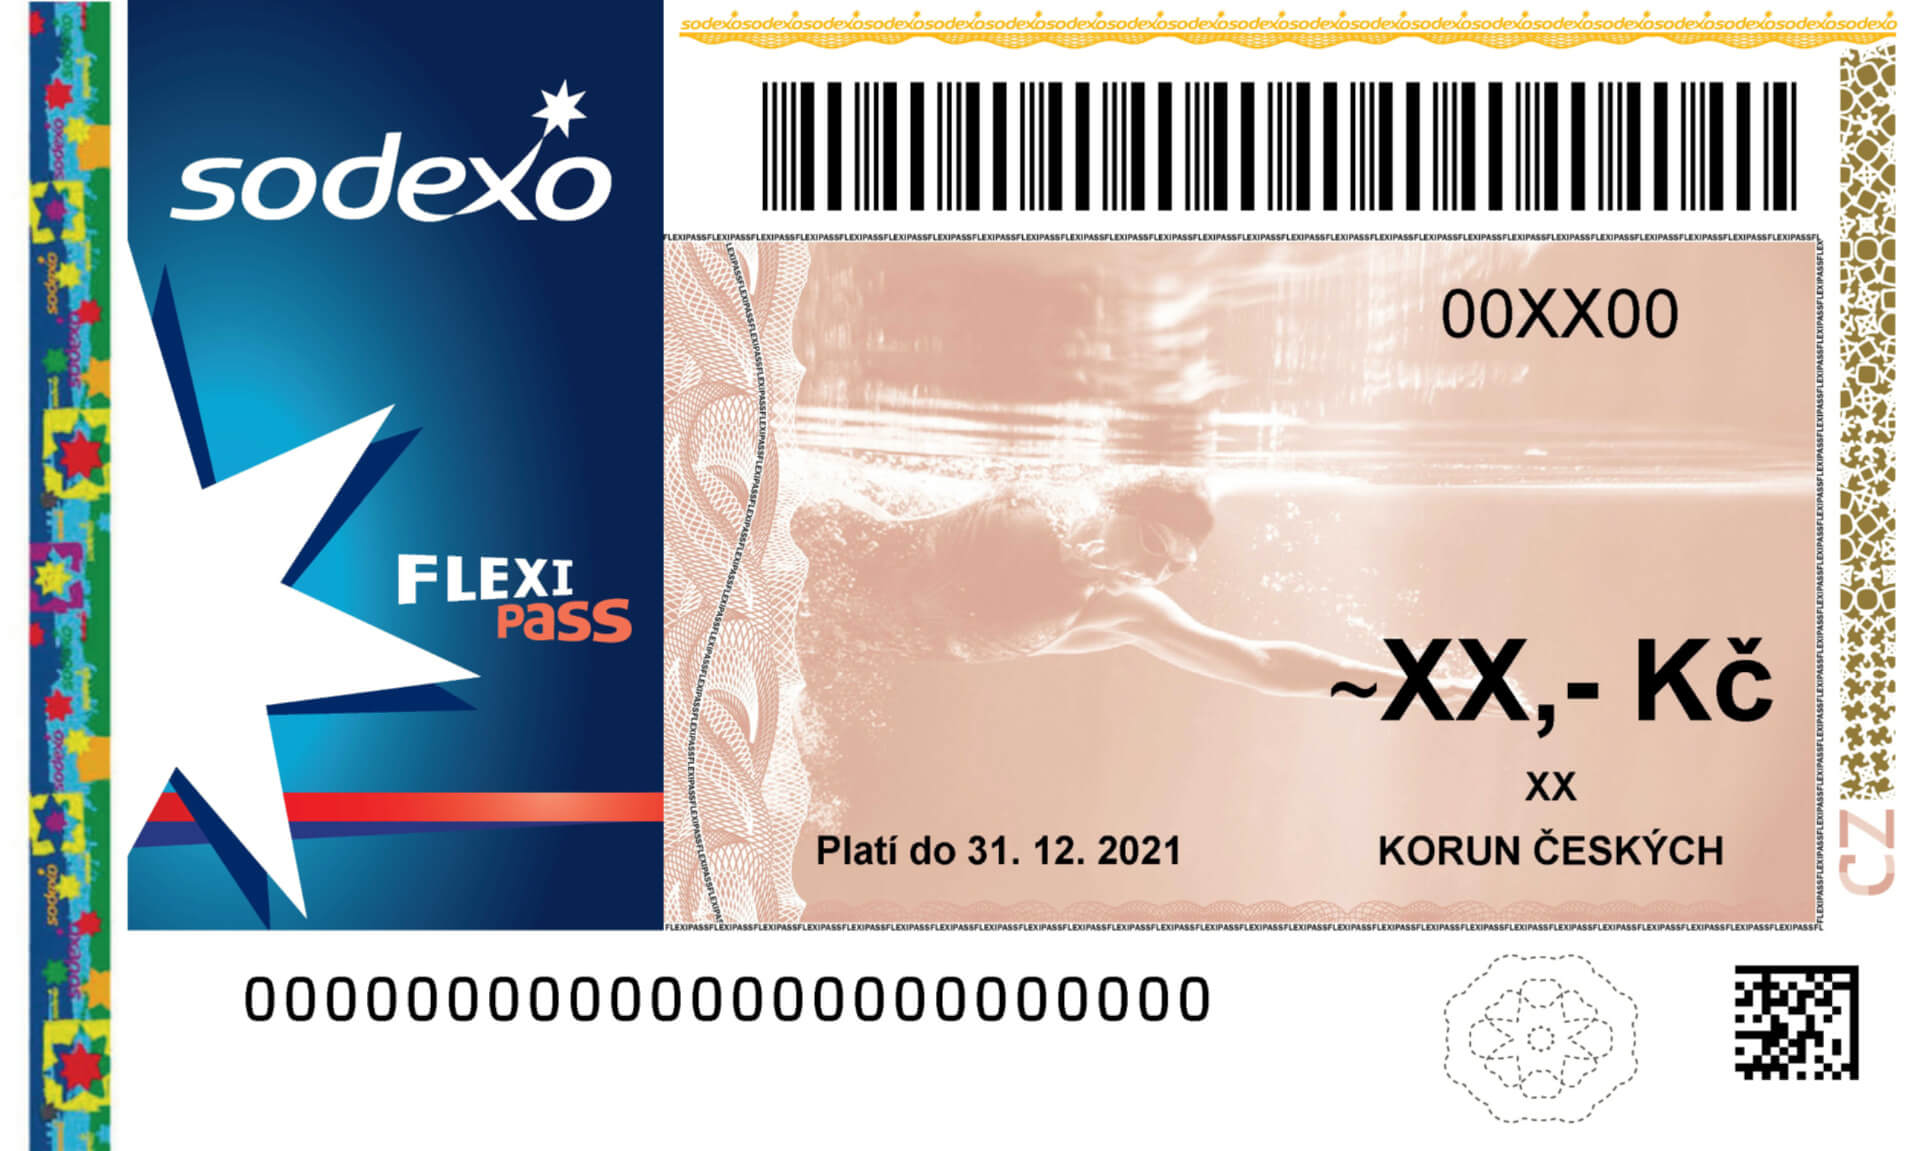 poukázka flexi pass